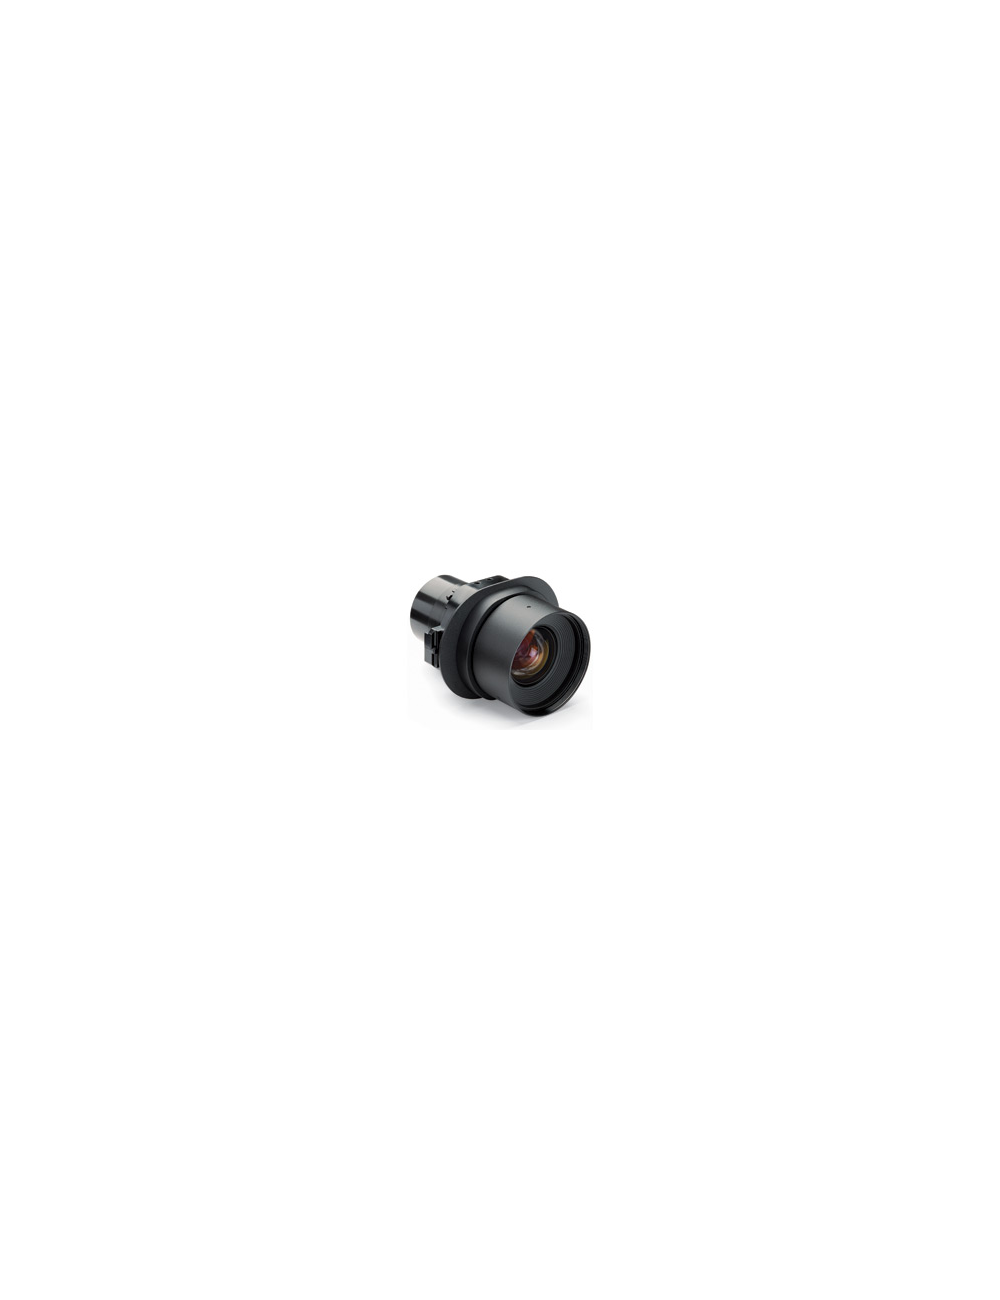 Short Zoom Lens 1.2-1.8